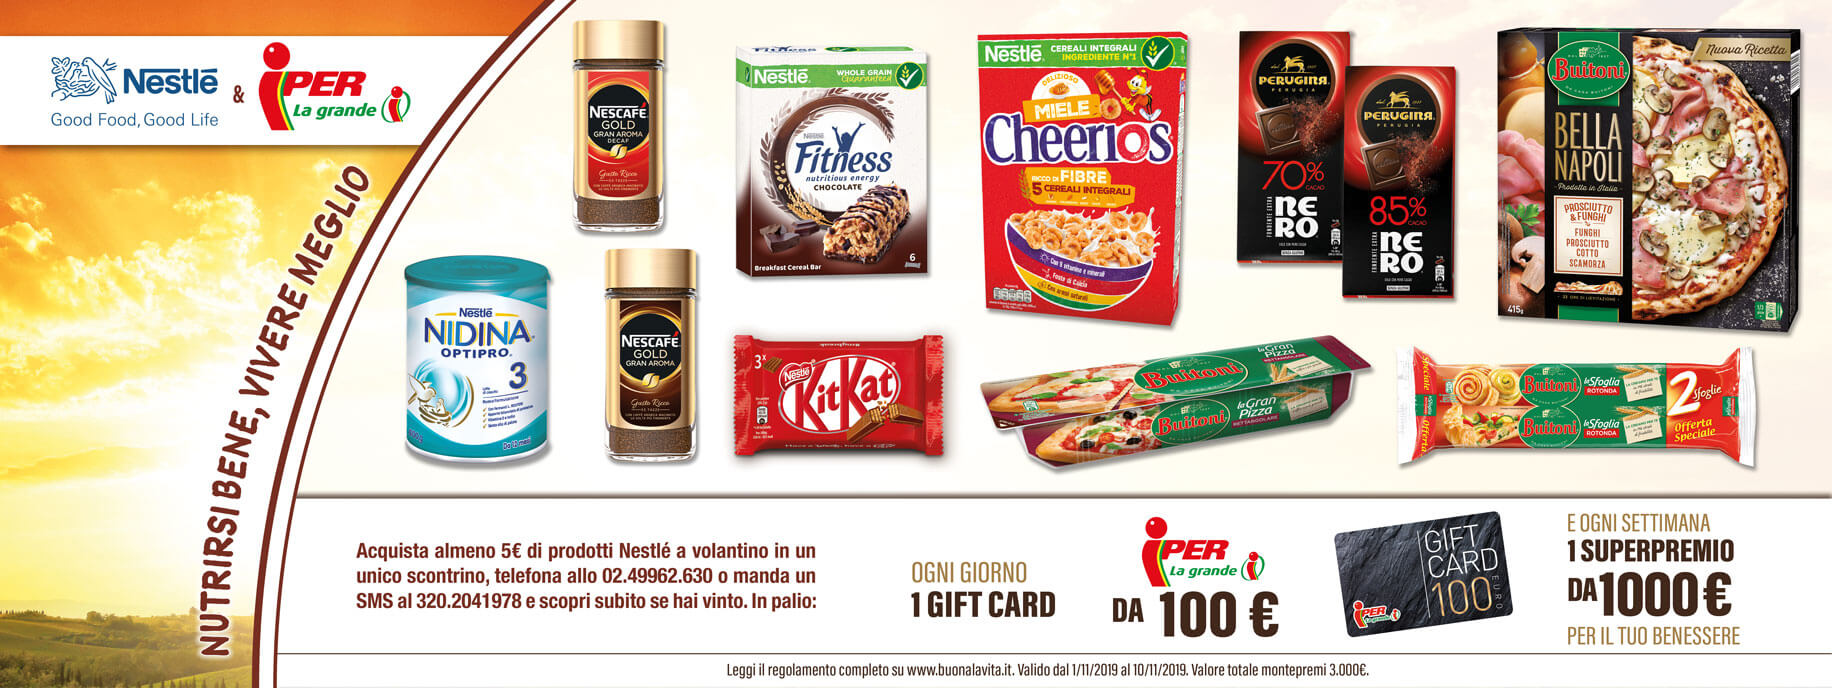 Nutrirsi bene, vivere meglio! Vinci con Nestlé & Finiper!